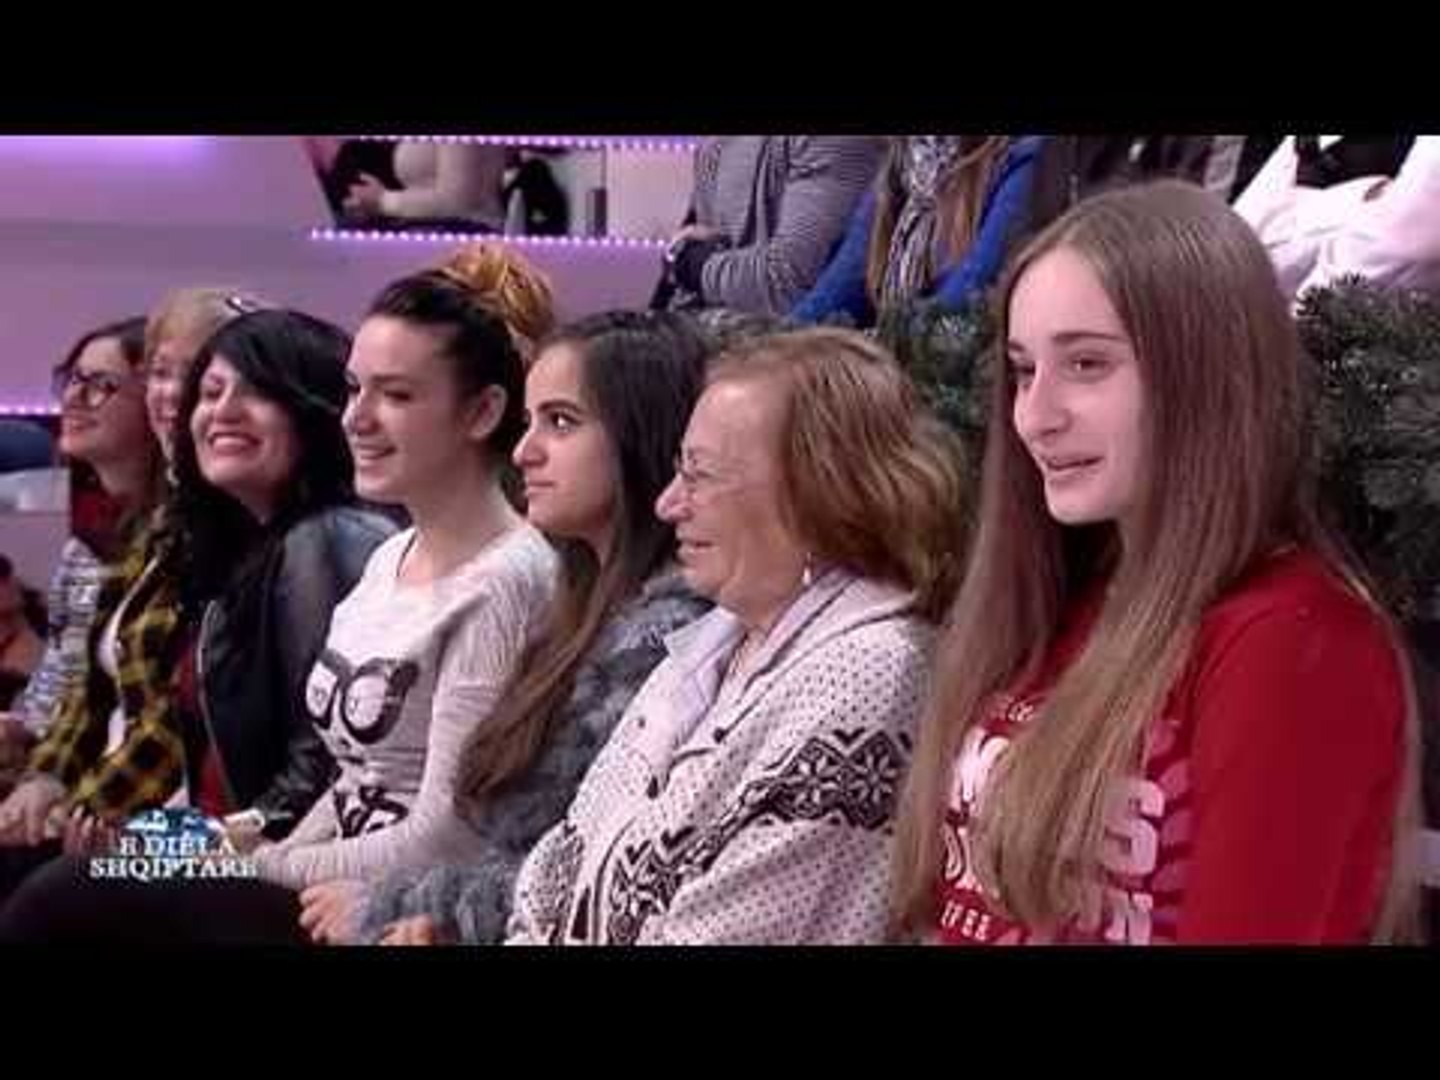 ⁣E diela shqiptare - Ka nje mesazh per ty - Pjesa 3! (18 dhjetor 2016)